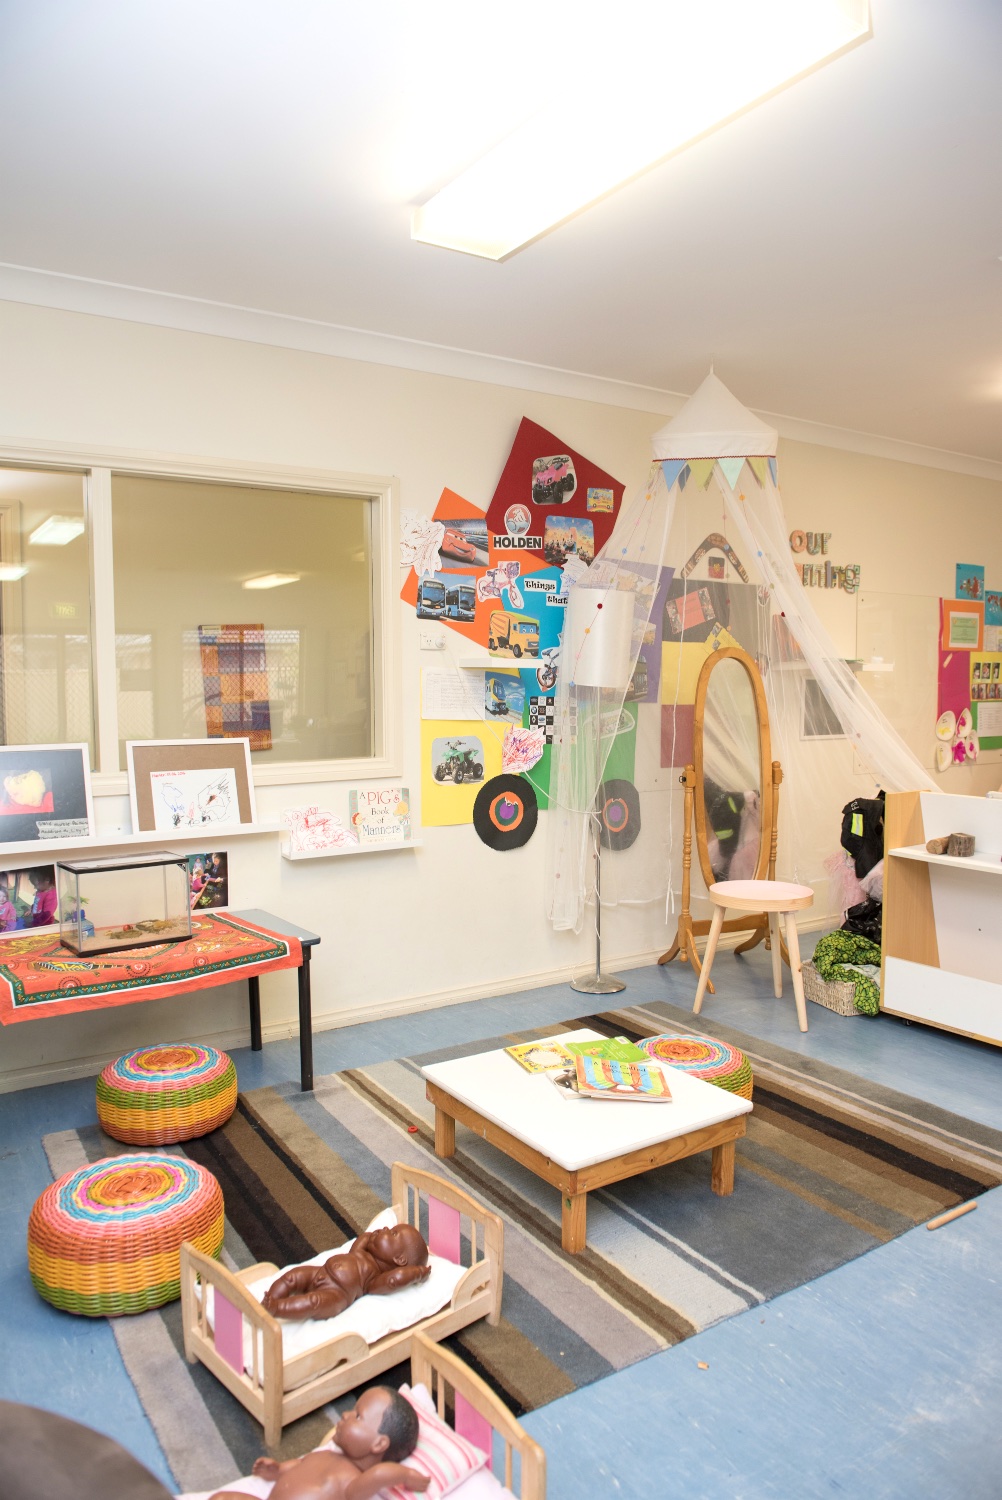 Goodstart Early Learning Plumpton | school | 351 Rooty Hill Rd N, Plumpton NSW 2761, Australia | 1800222543 OR +61 1800 222 543